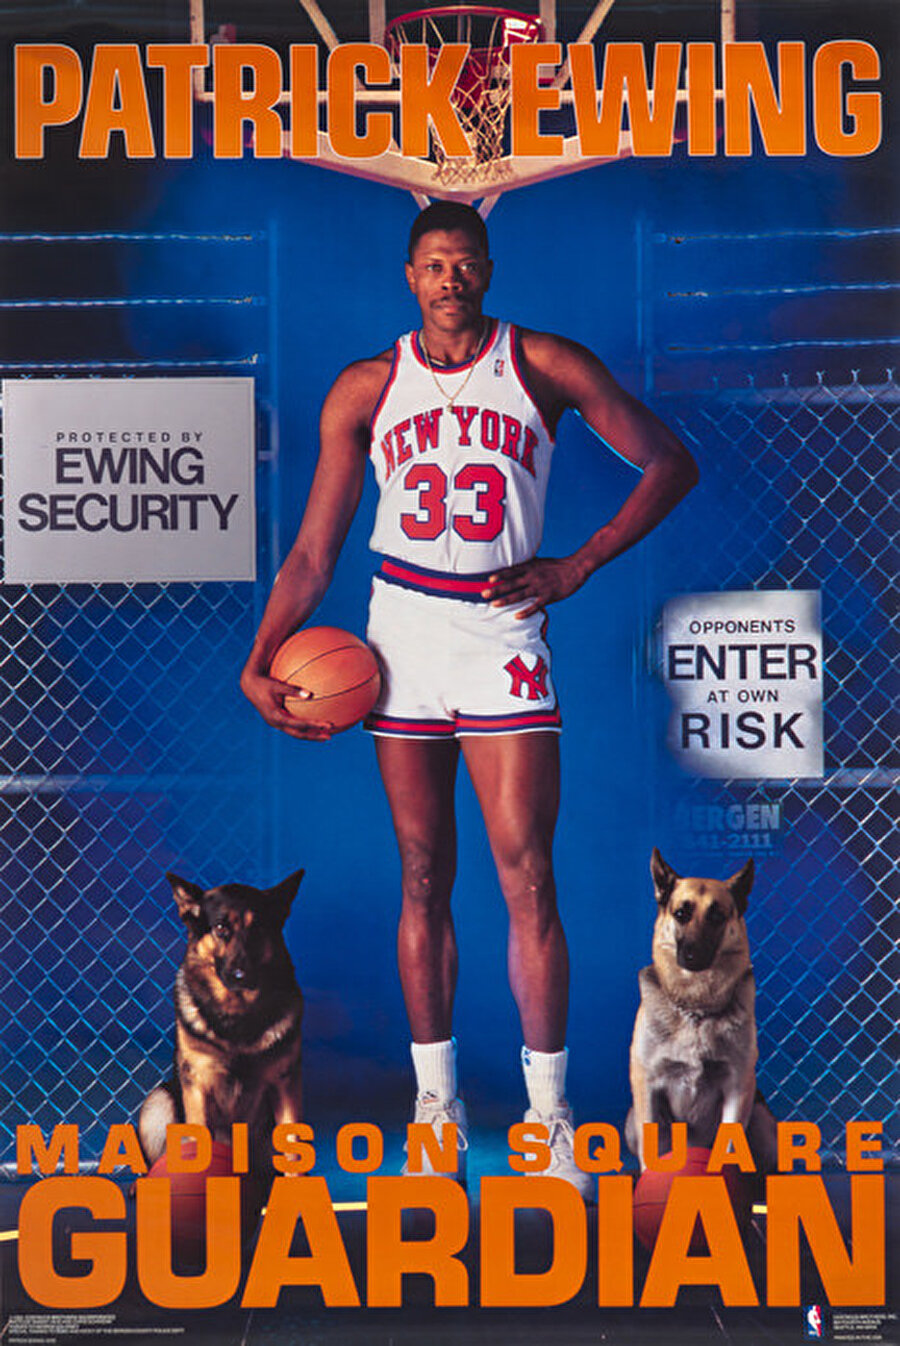 Patrick Ewing
Jamaikalı eski basketbolcu Patrick Ewing, NBA tarihinin en iyi 50 oyuncusu arasındadır.